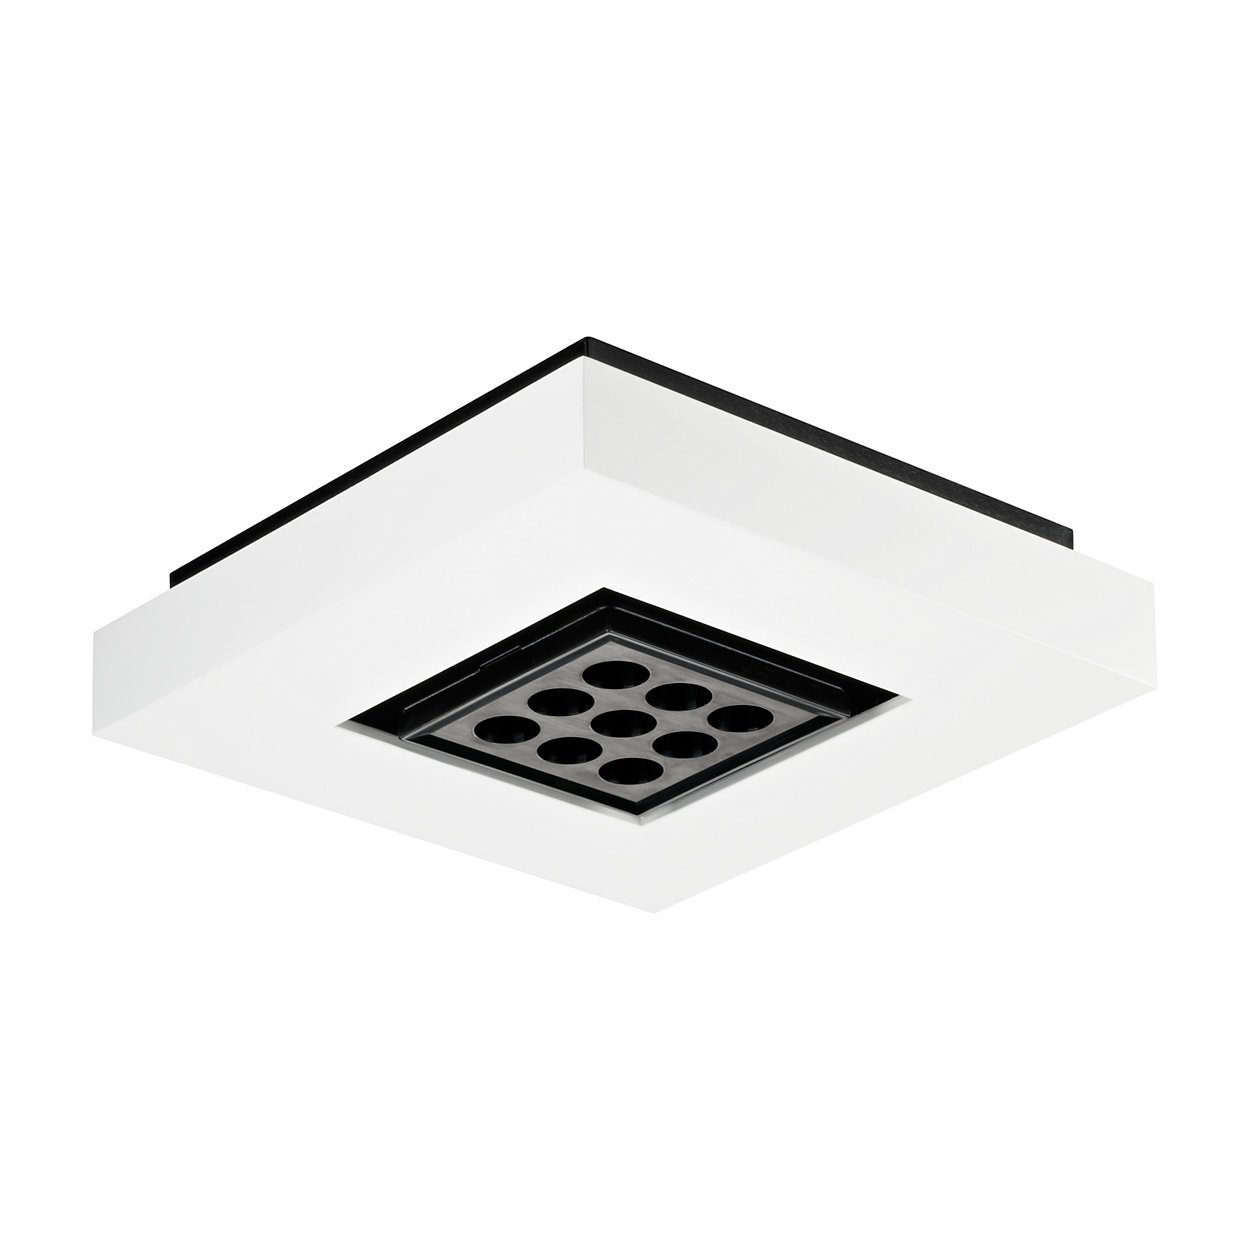 eW Downlight Powercore – Downlighter LED sobrepor luz branca para iluminação geral ou destaque